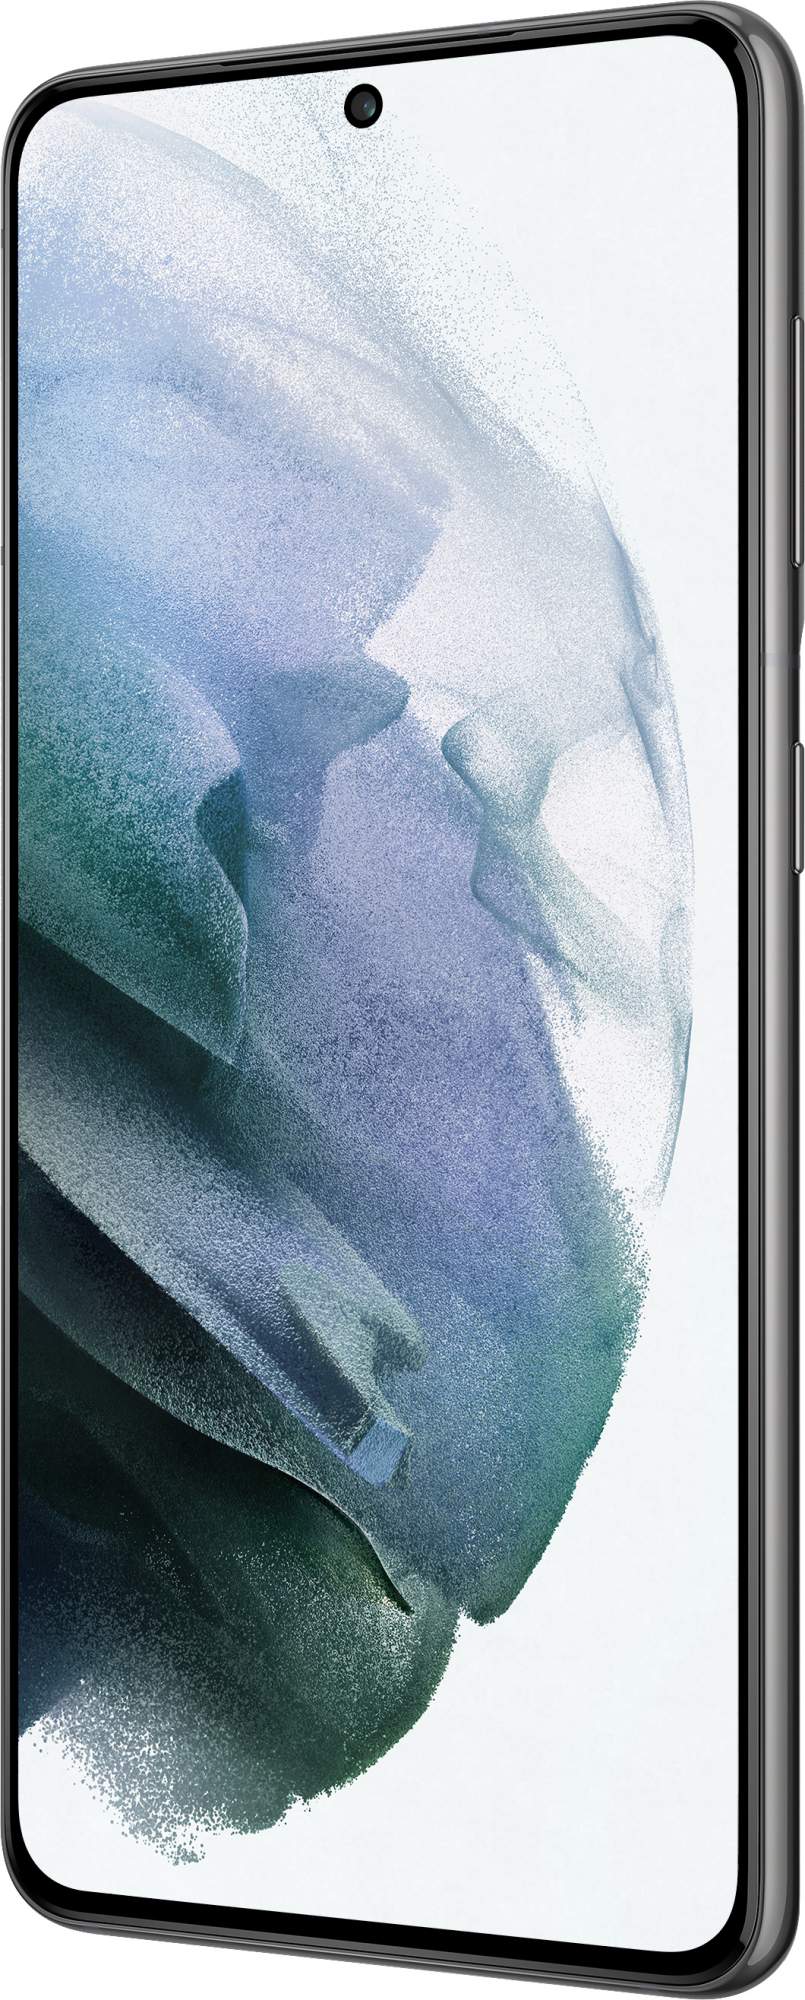 Смартфон Samsung Galaxy S21 8/256GB Phantom Gray (SM-G991BZAGSER), купить в  Москве, цены в интернет-магазинах на sbermegamarket.ru